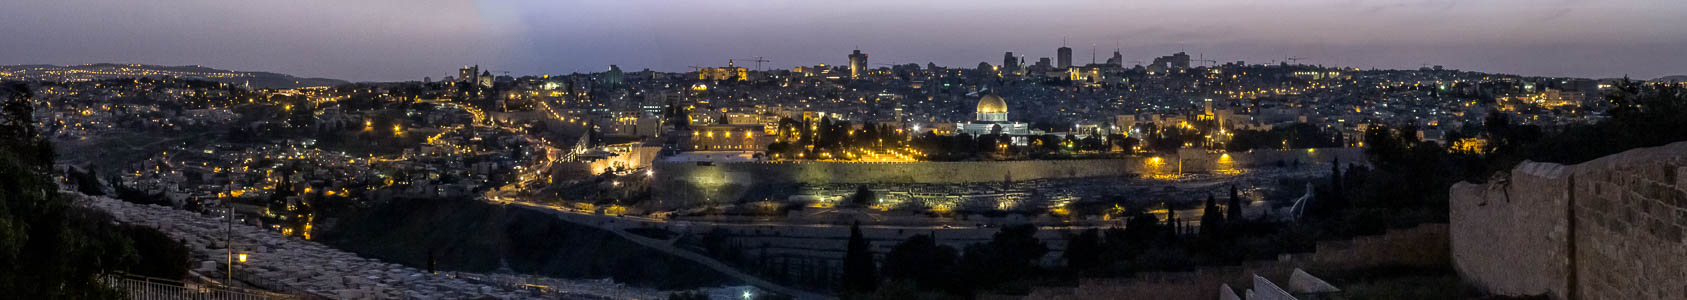 Jerusalem Blick vom Ölberg: Altstadt mit Tempelberg (Al-Aqsa-Moschee und Felsendom)